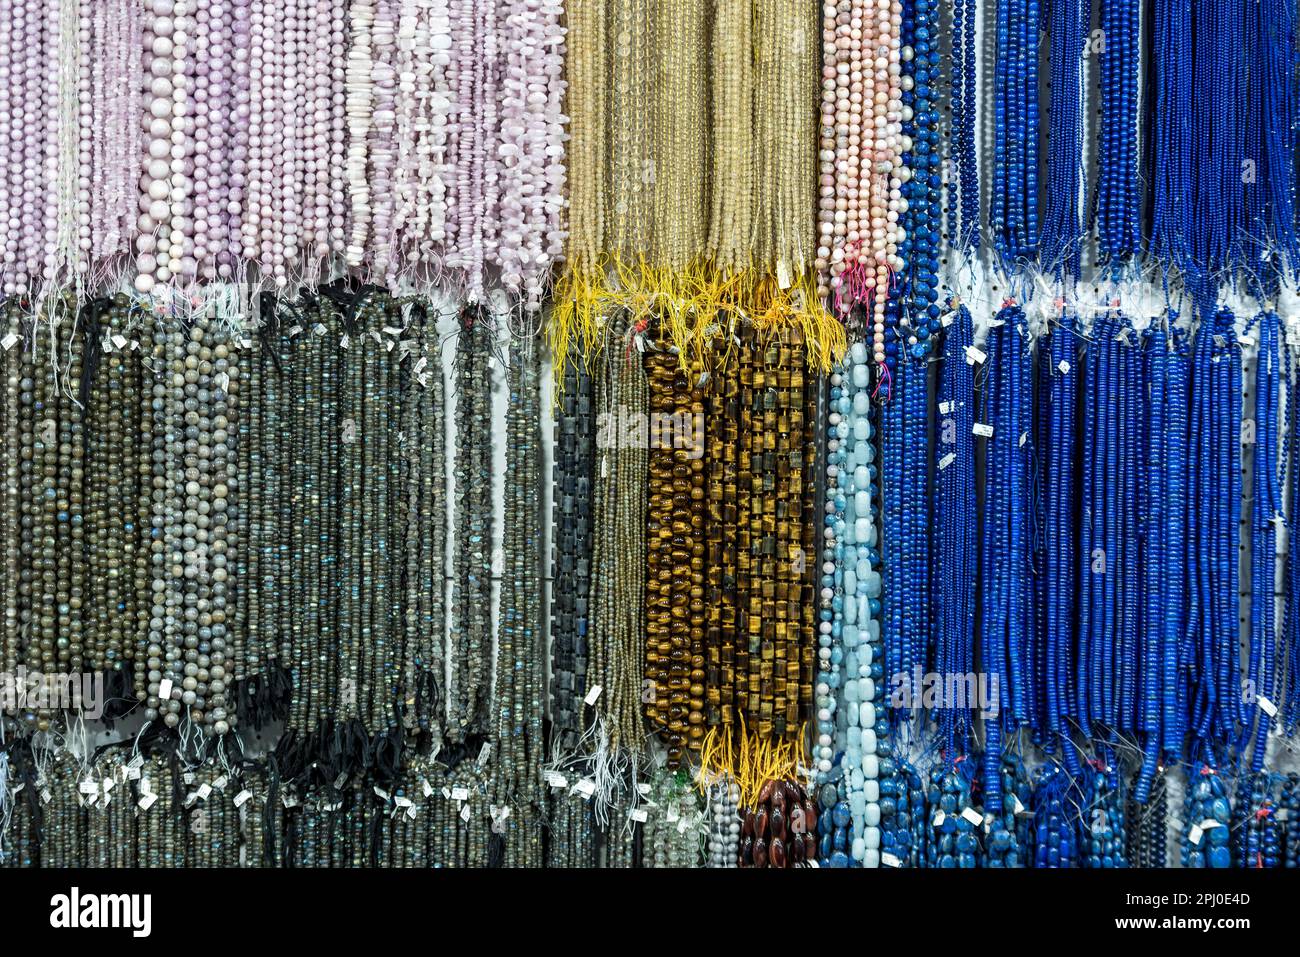 Halsketten aus Edelsteinen, Perlen, Korallen, Kunar Gems Messestand, INHORGENTA, Schmuckmesse Uhren Edelsteine, Luxus, München Stockfoto